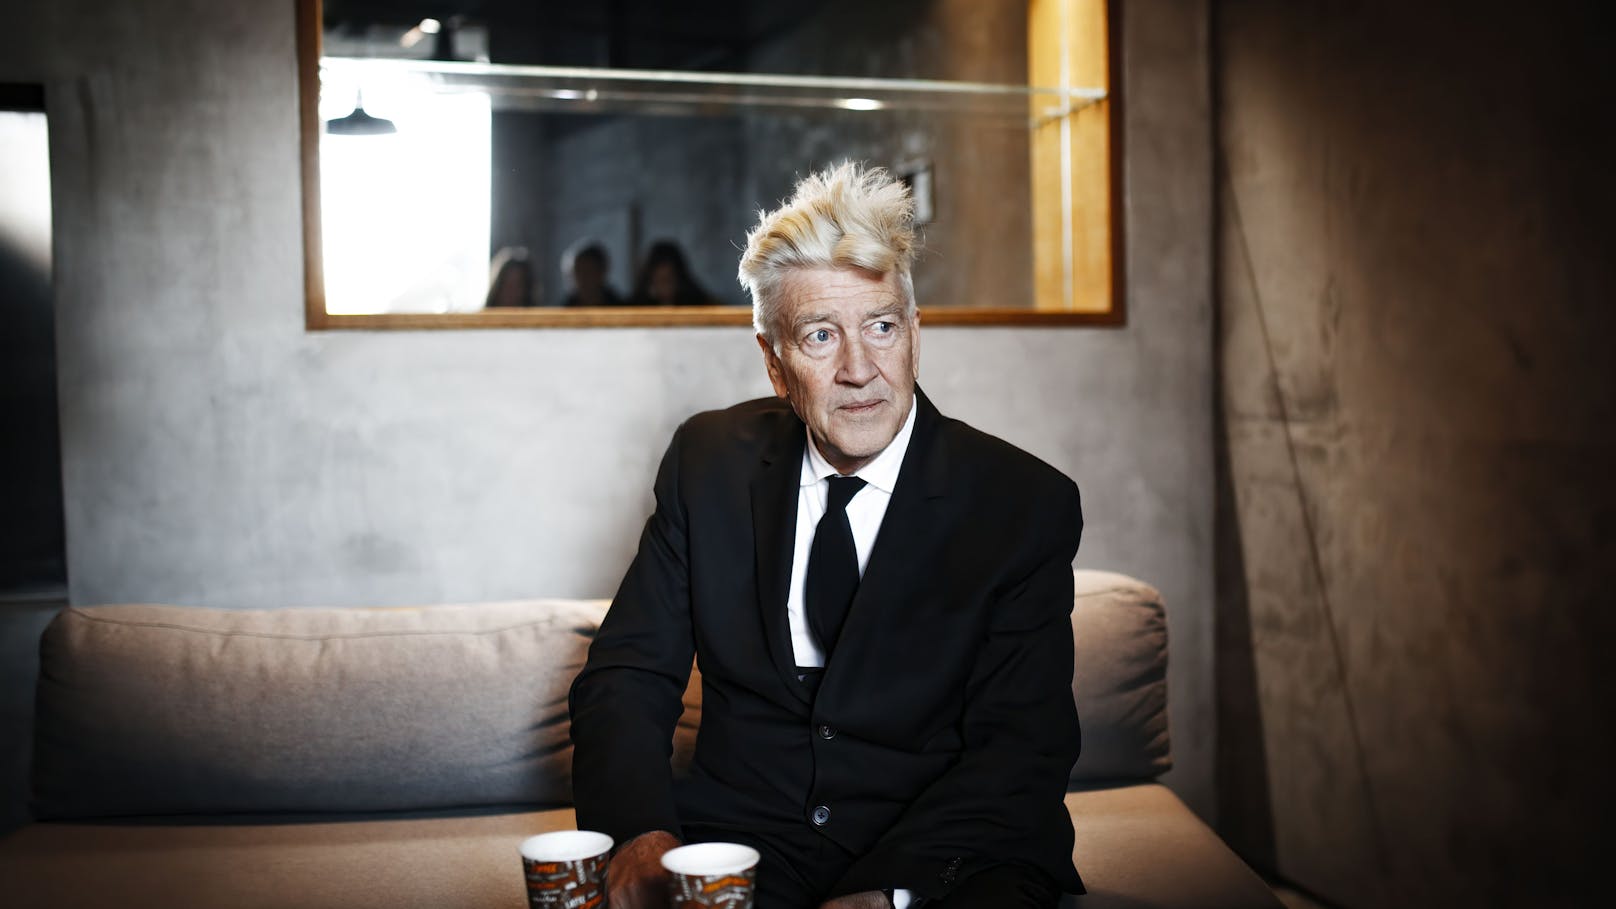 Kultregisseur David Lynch lässt auf Neues hoffen